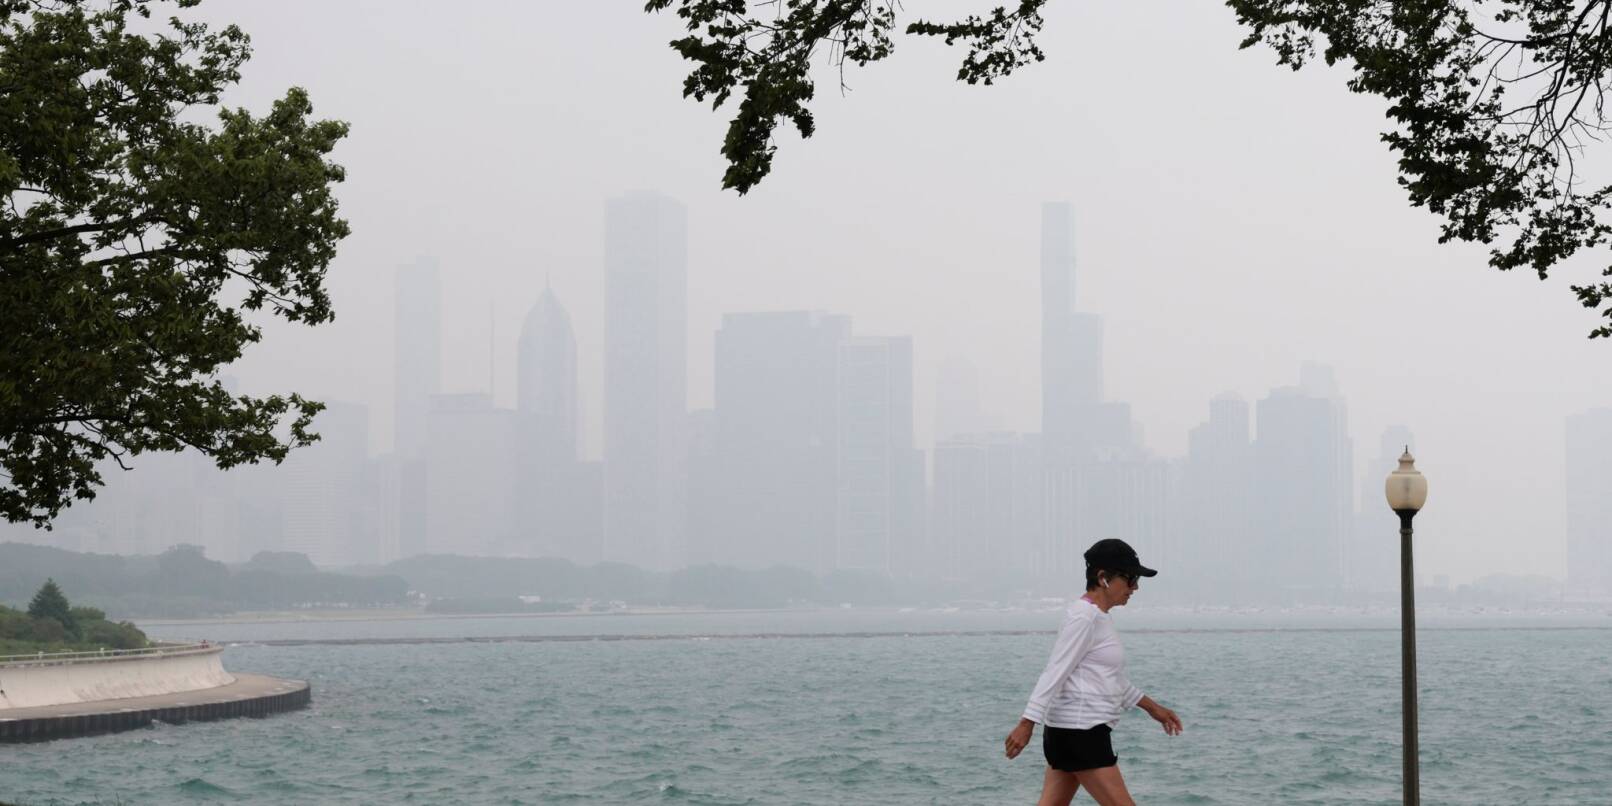 Die Skyline von Chicago ist in Dunst gehüllt. Waldbrände in Kanada zusammen mit höheren Ozonwerten sorgen weiterhin für schlechte Sichtverhältnisse und Luftqualitätswarnungen in der Region.